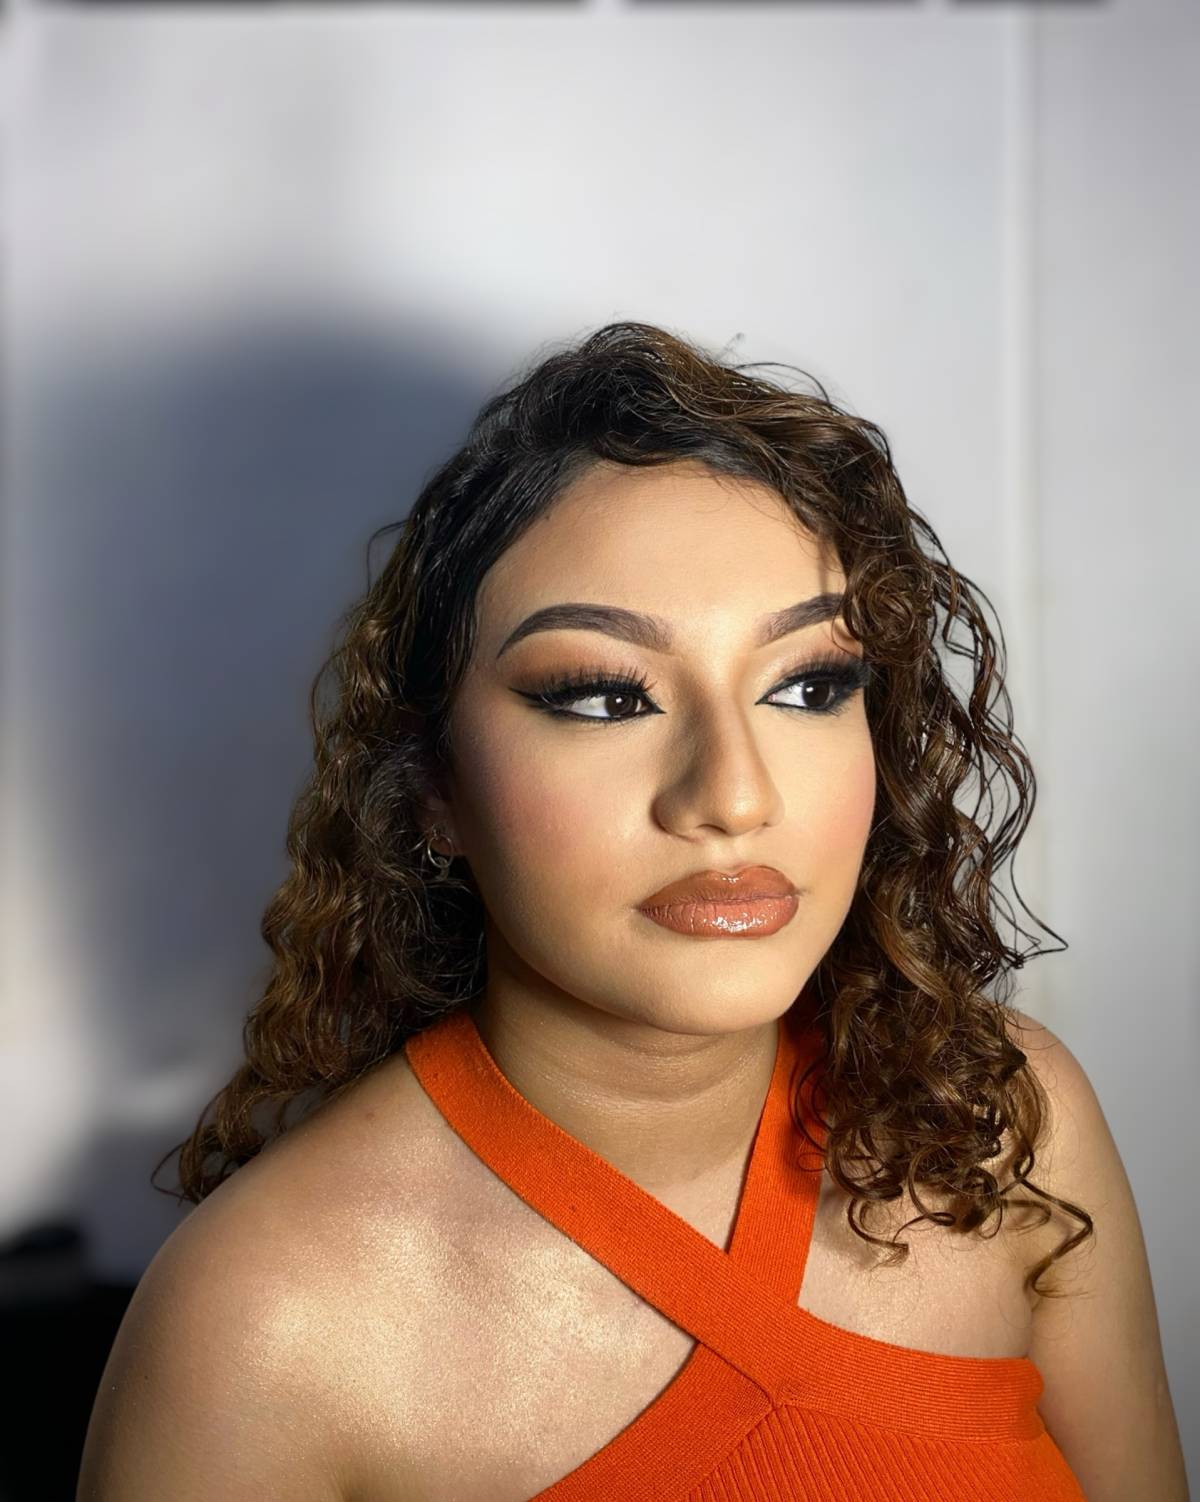 Tatiana beauty - Antofagasta - Maquillaje para eventos